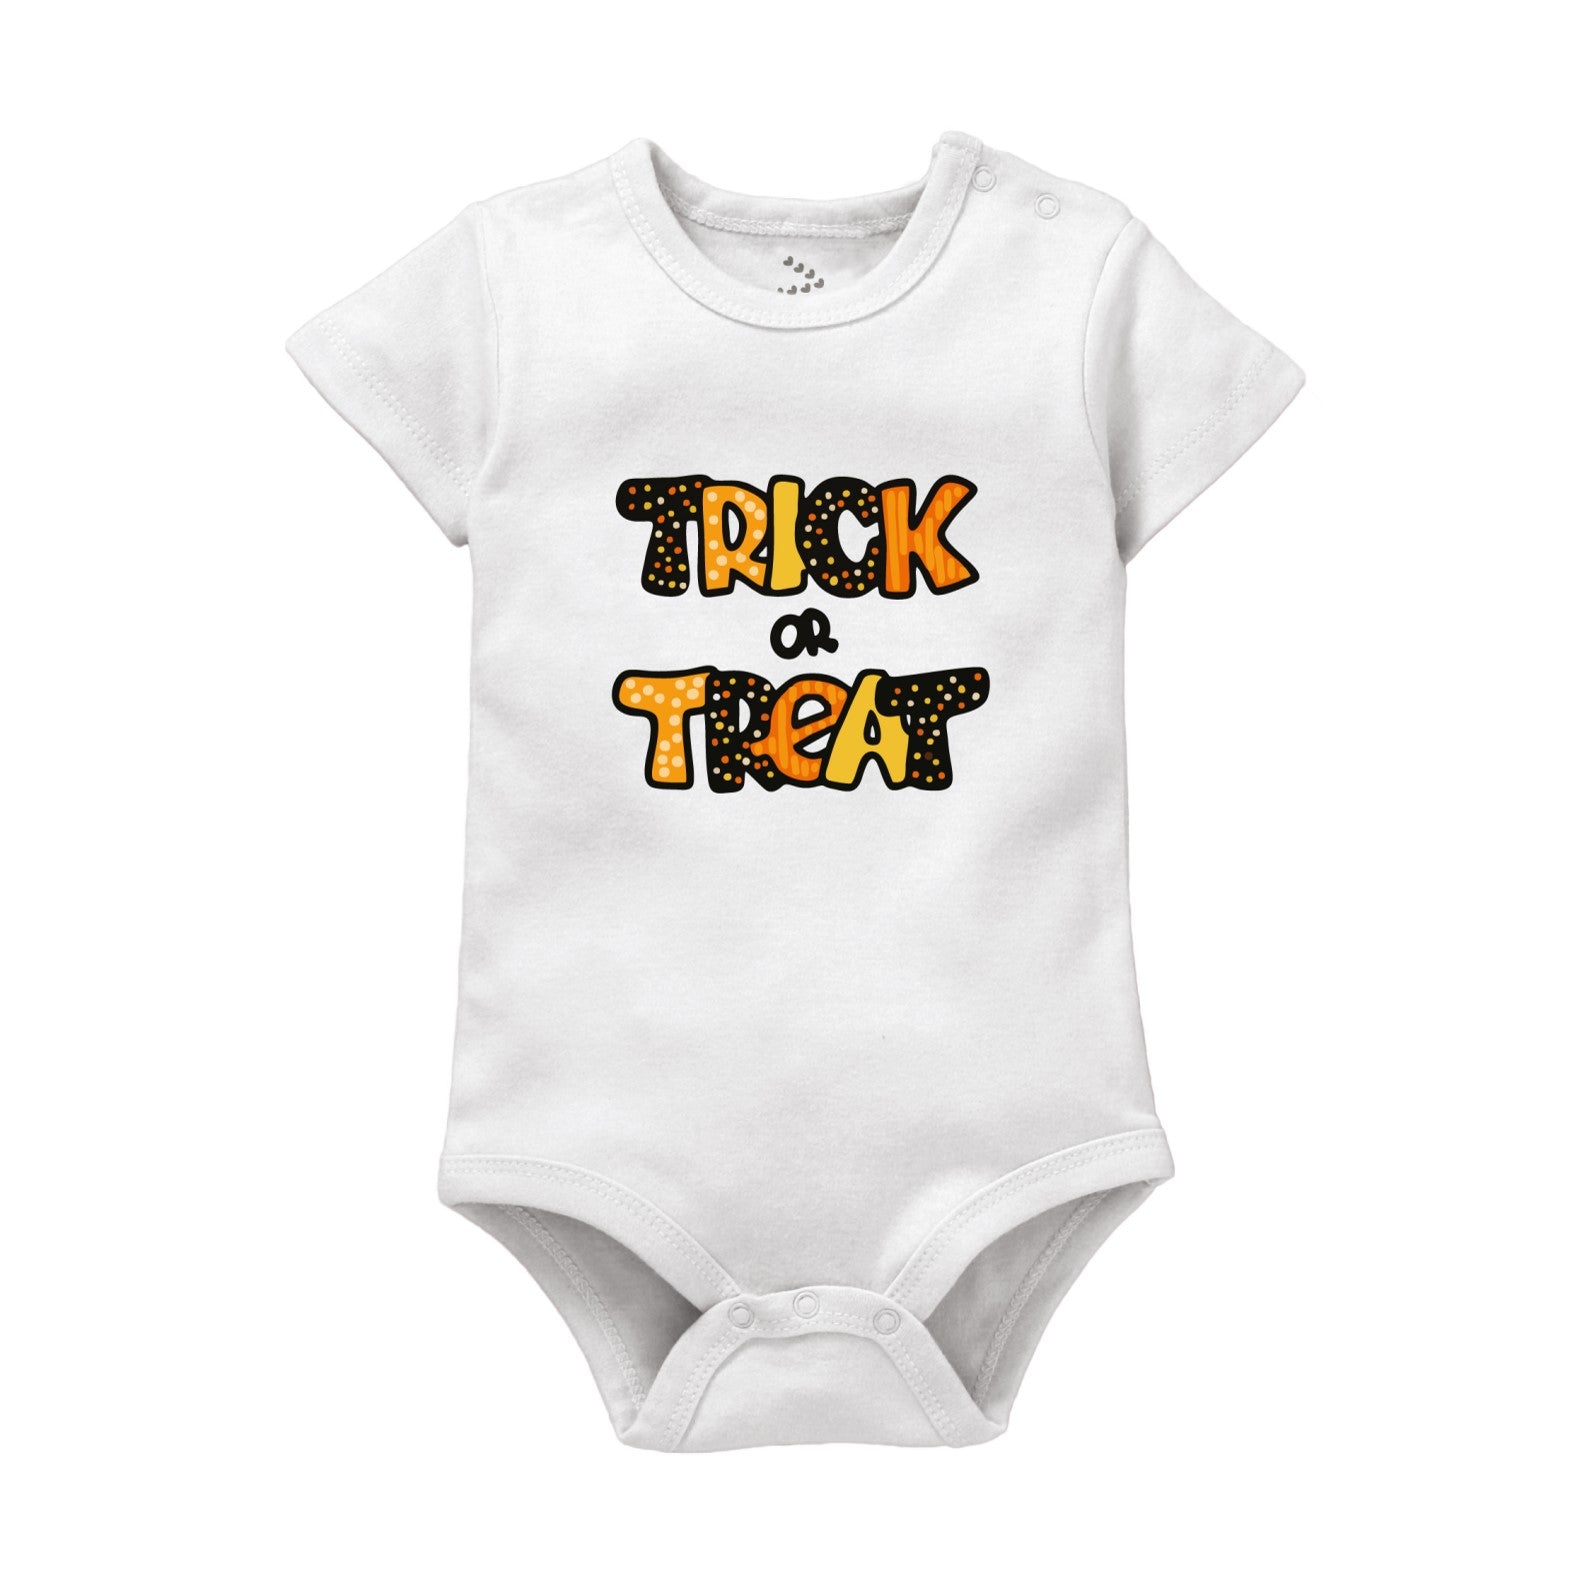 Trick & Treat Printed Baby Onesie